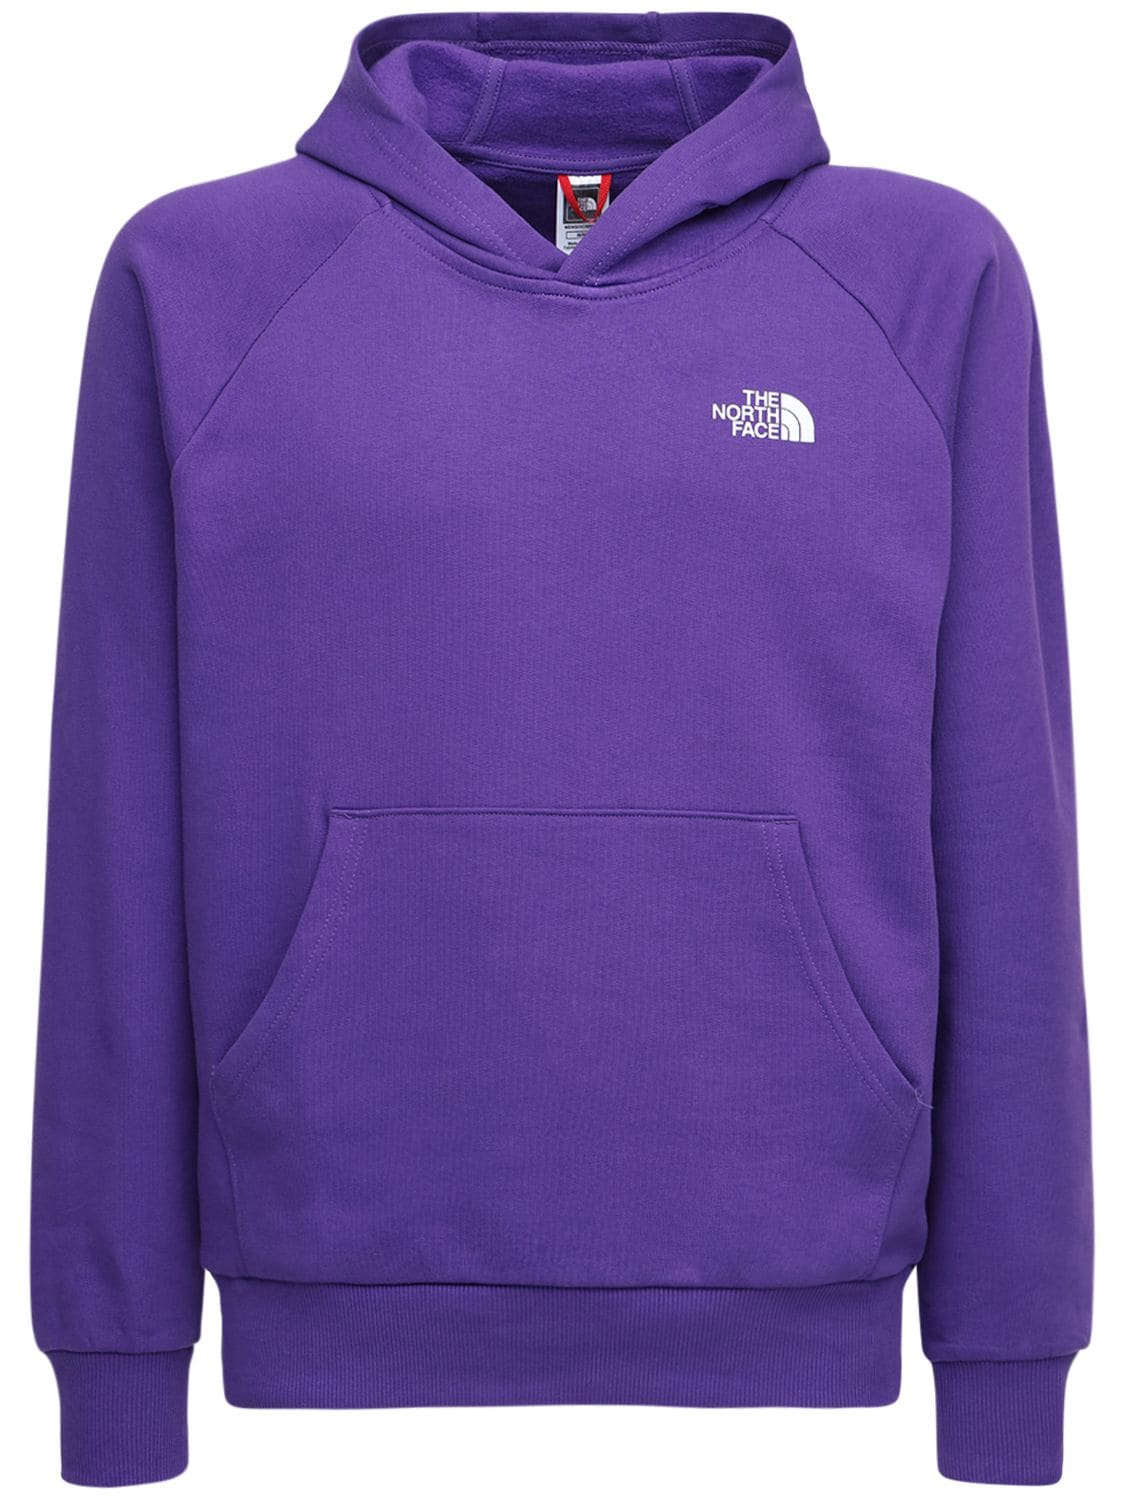 The North Face Raglan Redbox Sweatshirt Hoodie In Peak Purple